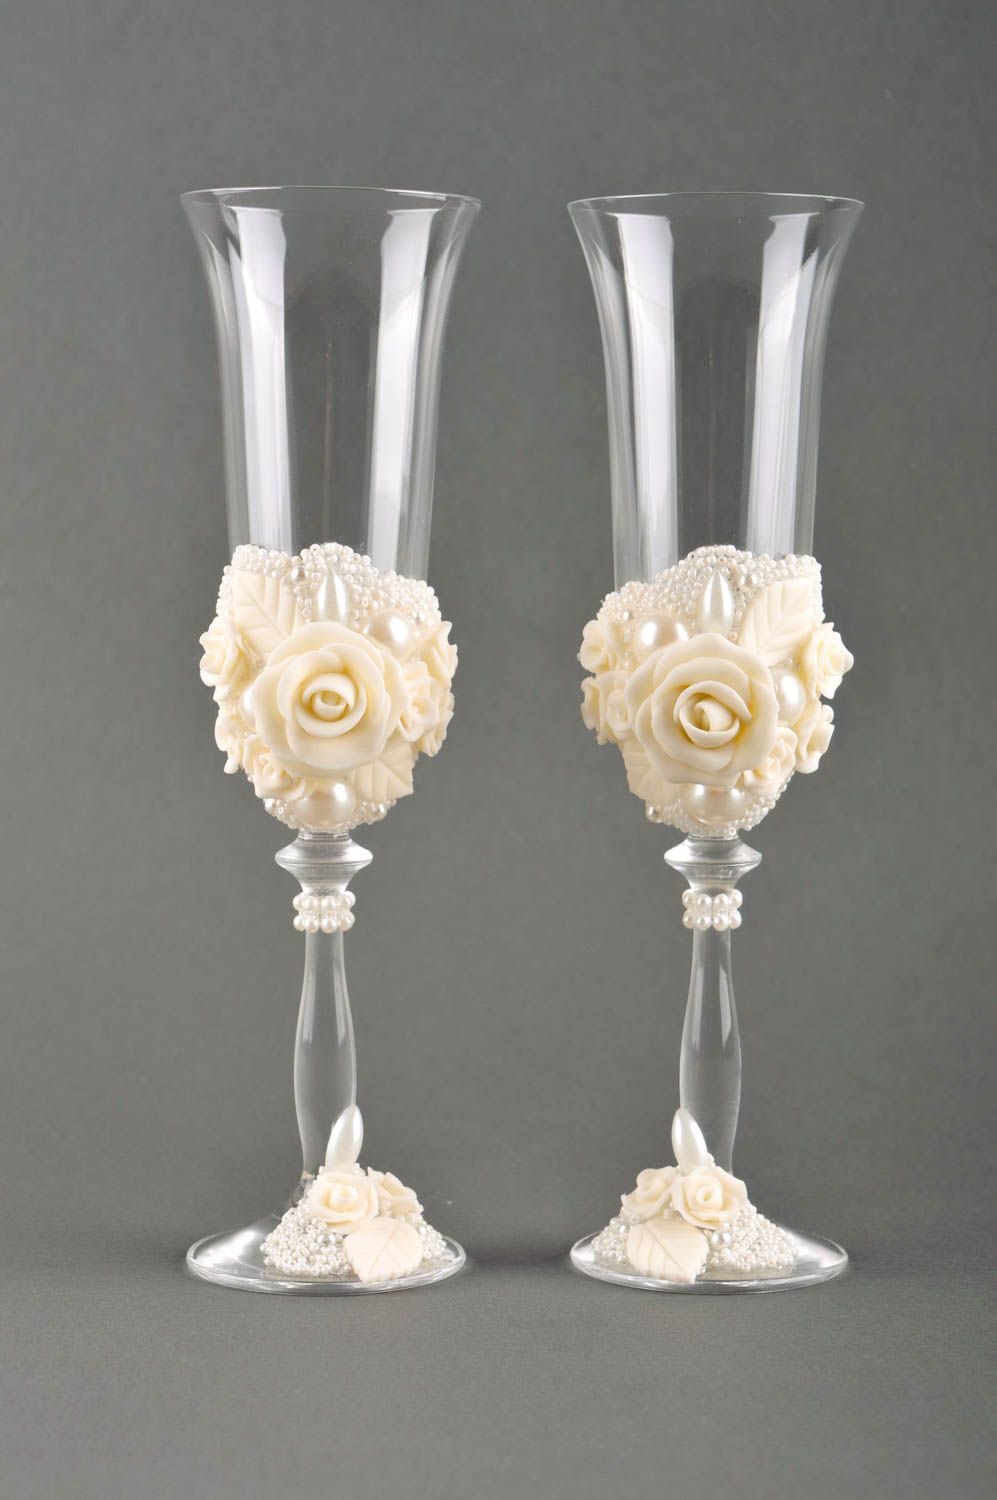 Copas decoradas para boda blancas artesanales envases de vidrio detalles de boda foto 2